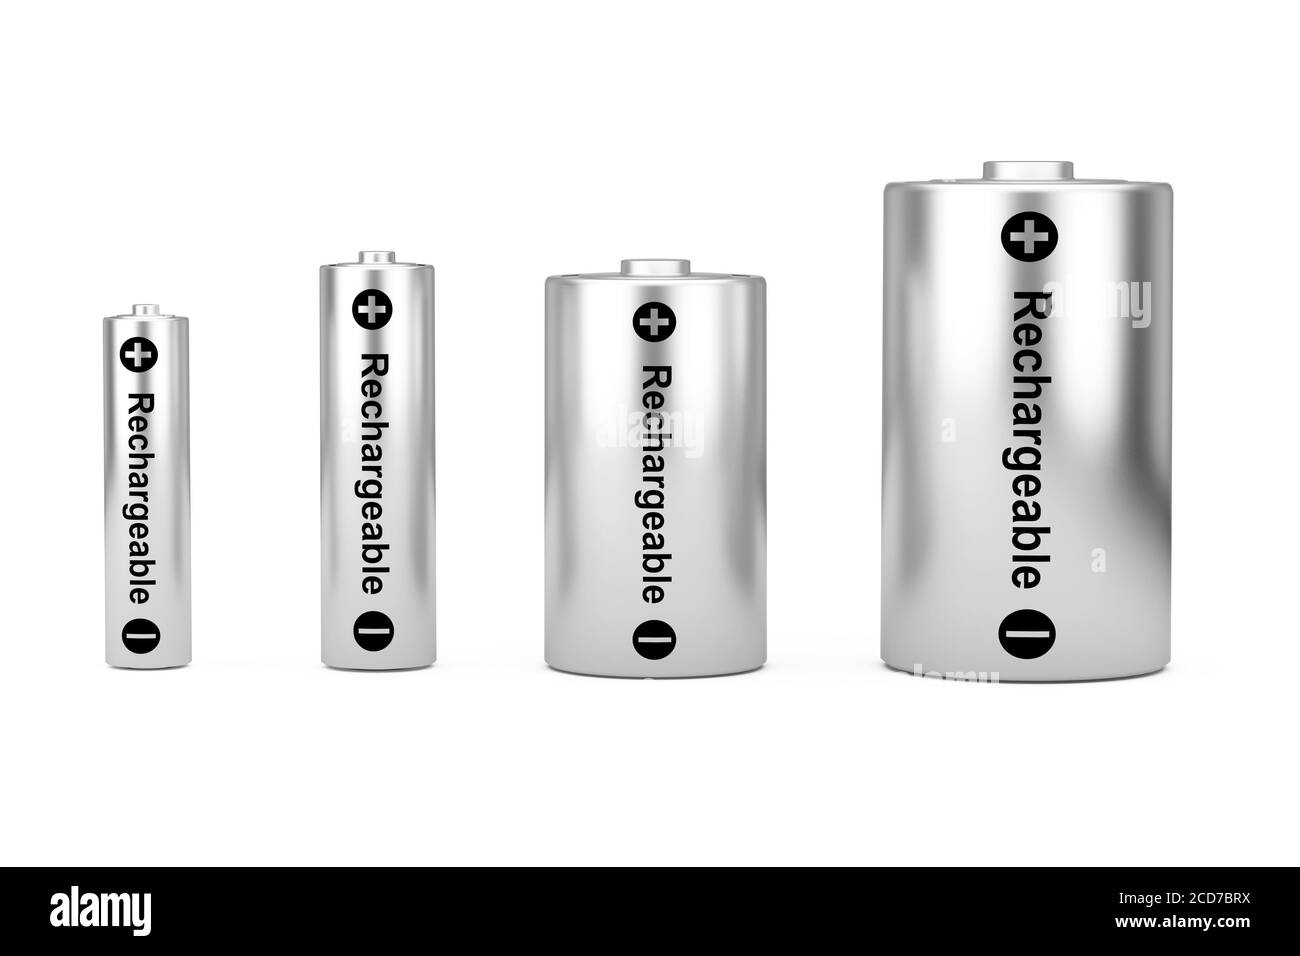 Jeu d'icônes de batterie alcalines avec différents formats AAA, AA, C, D et panneau rechargeable sur fond blanc. Rendu 3d Banque D'Images